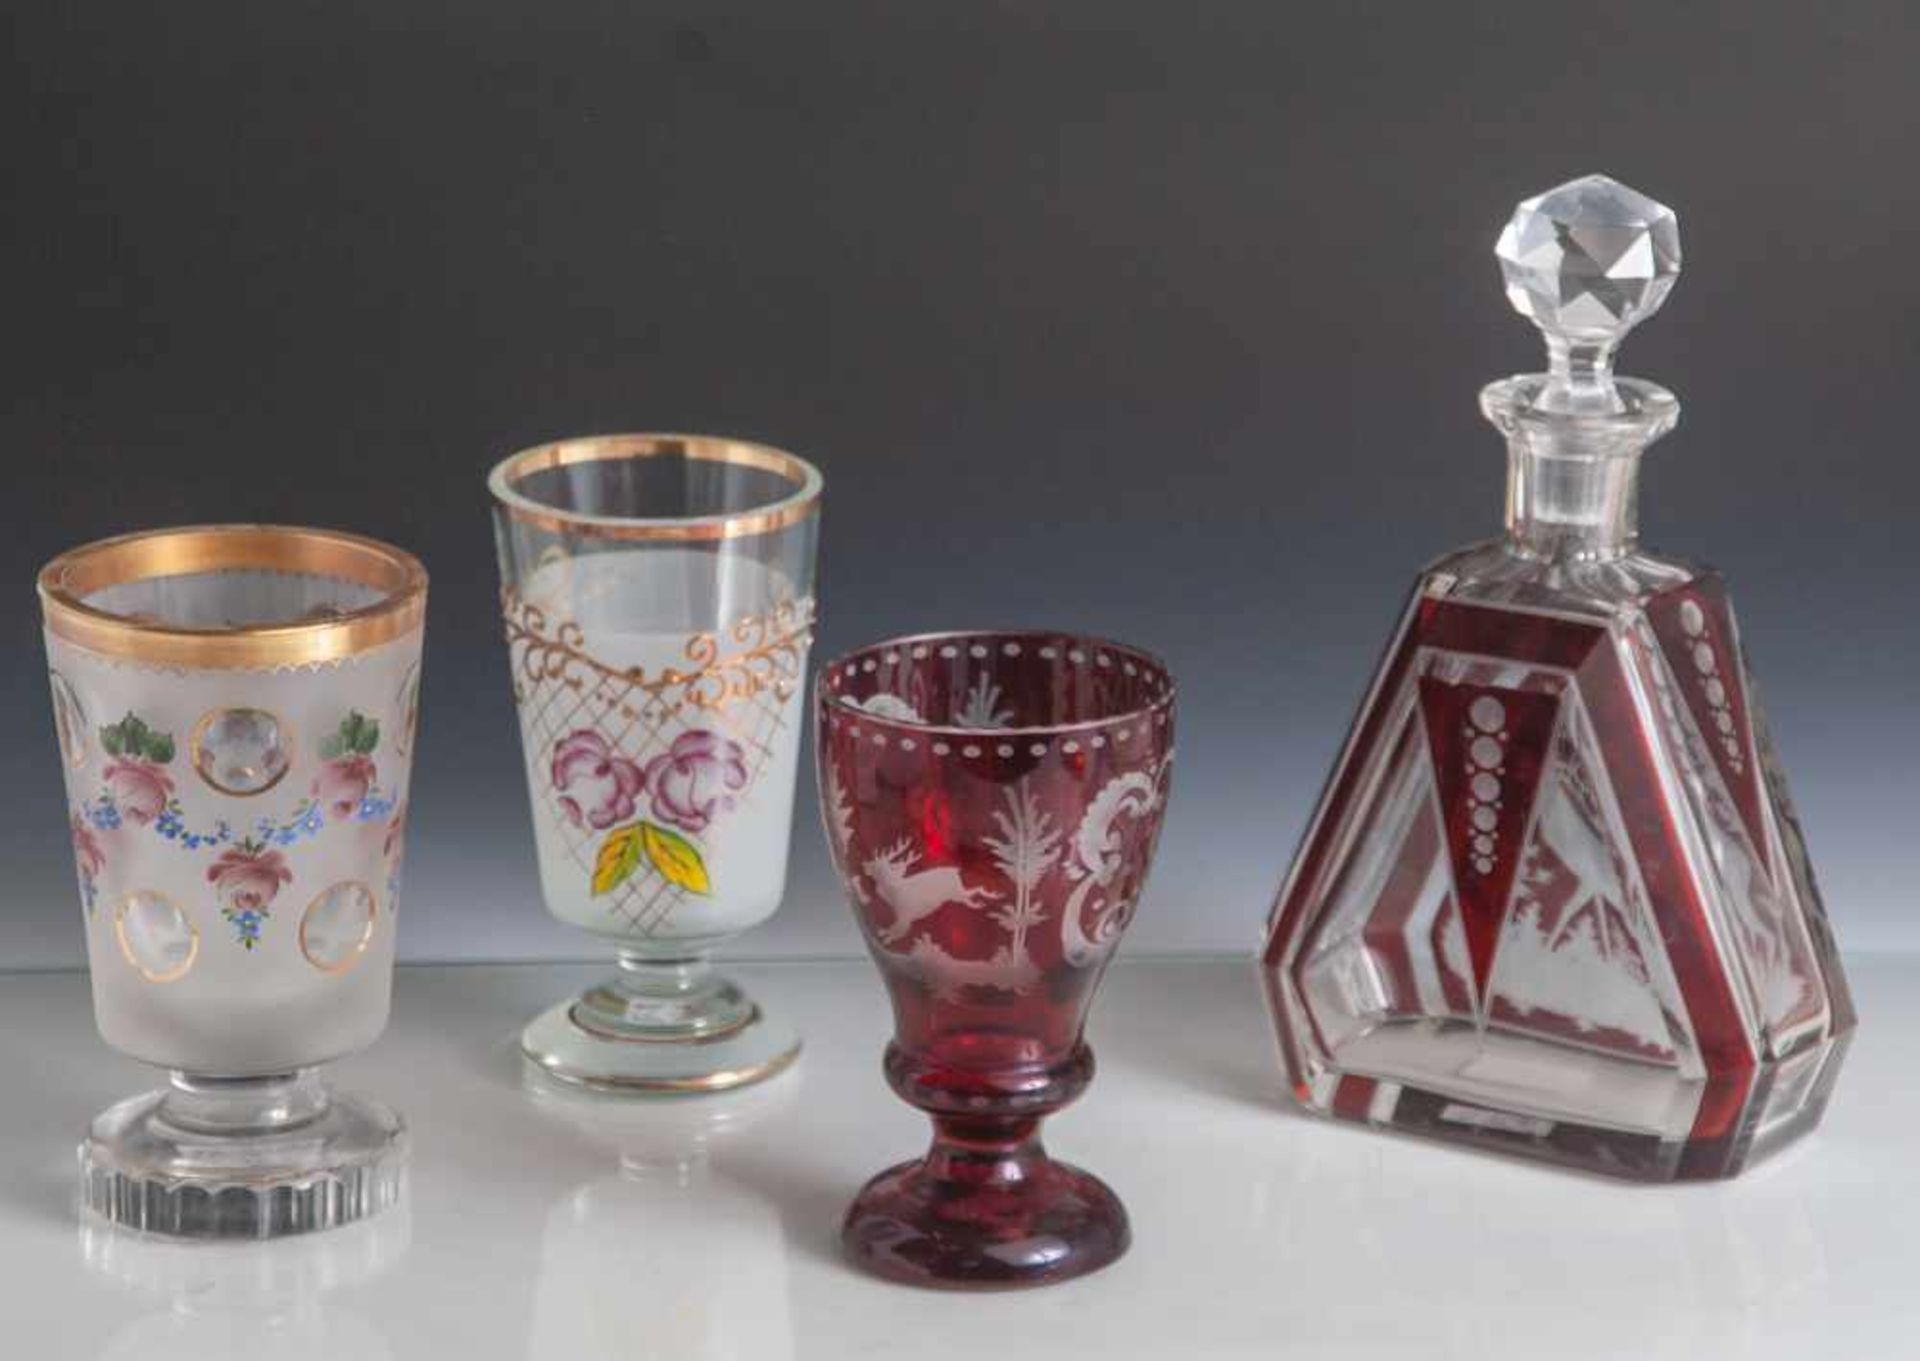 4 Teile Glas, Ende 19. Jahrhundert, 3 Fußbecher und 1 Flakon. Farbloses Glas, rot überfangen/